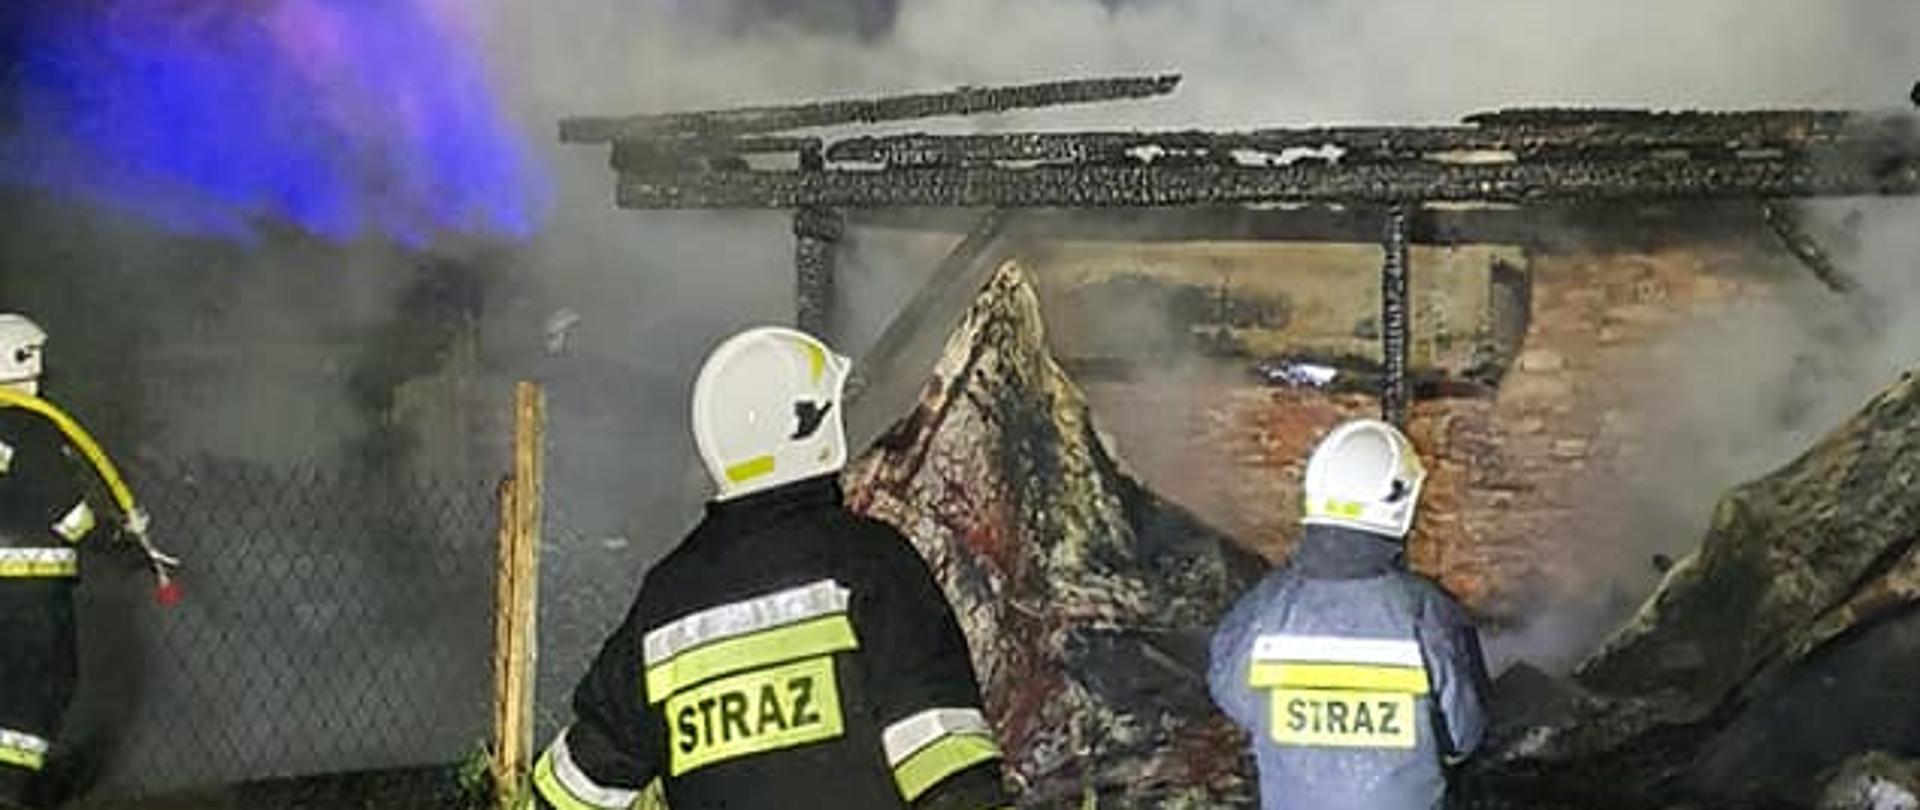 Na zdjęciu strażacy OSP ze sprzętem burzącym i linią gaśniczą naprzeciwko pożaru budynków gospodarczych w trzemosznie